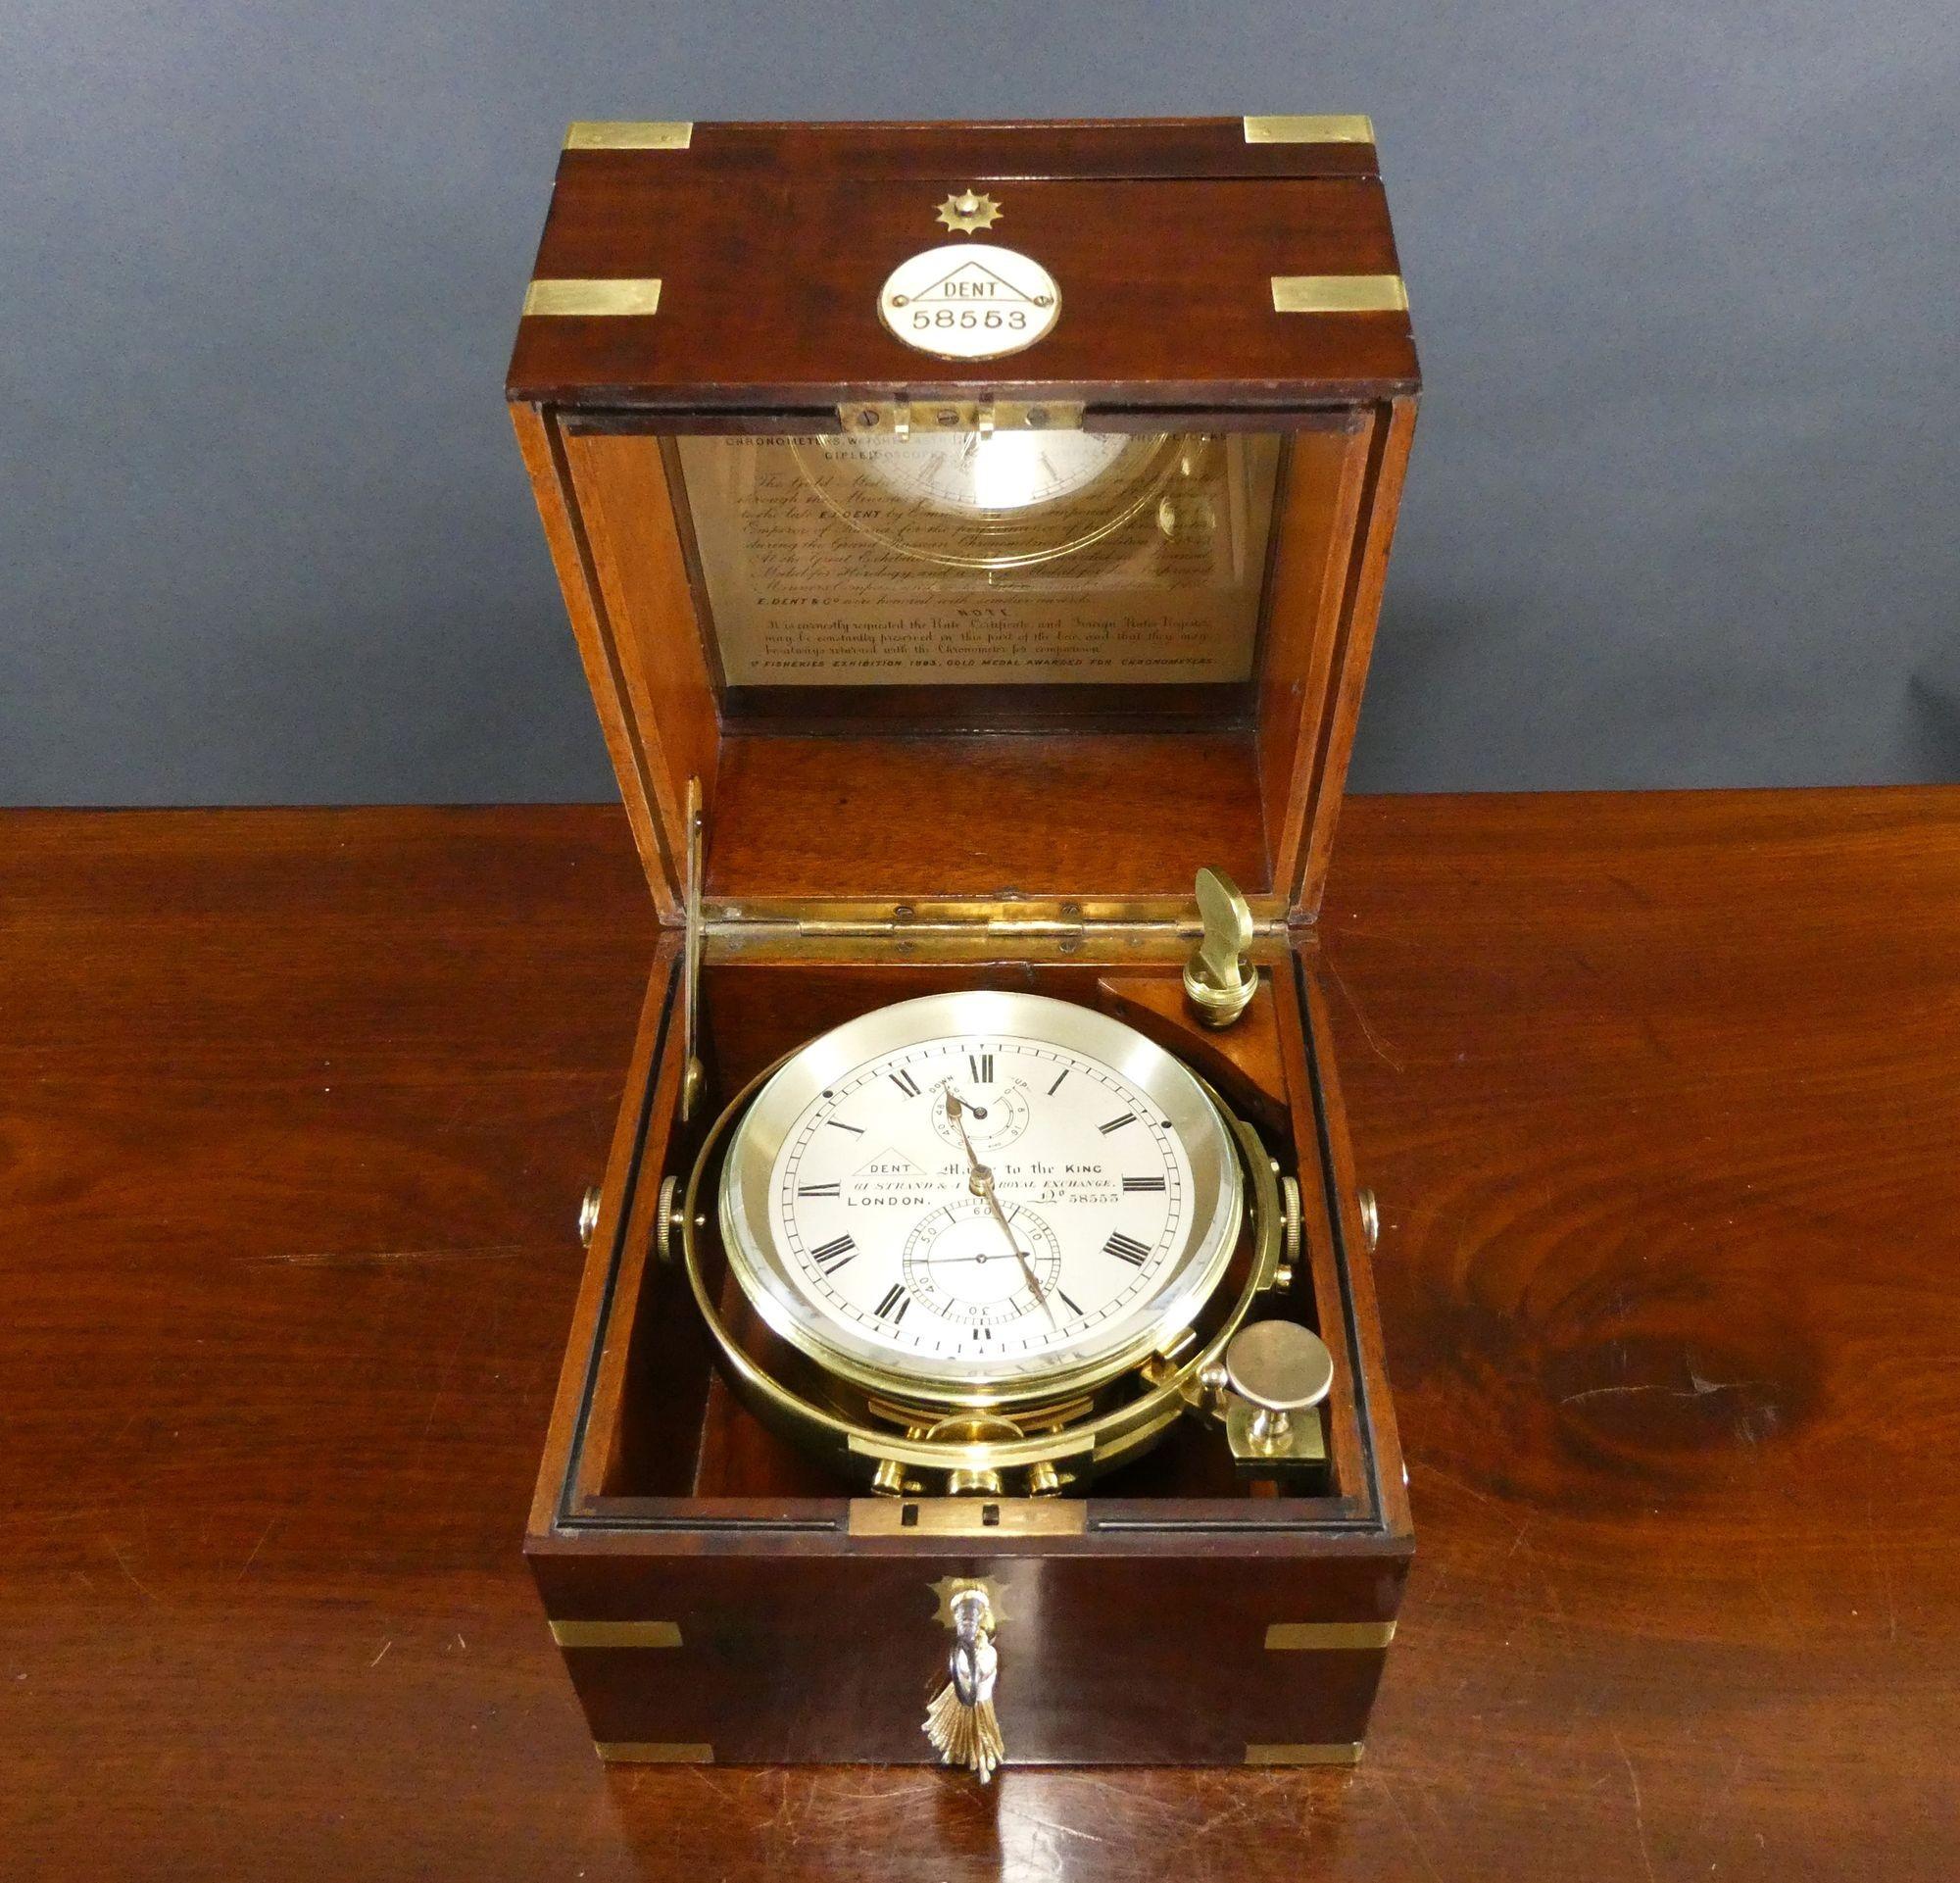 Chronomètre de marine à deux jours de Marin, Londres No. 58553

Chronomètre de marine à deux jours de Marin présenté dans une belle boîte à trois niveaux en acajou reliée en laiton avec des poignées de transport encastrées sur les côtés, une plaque